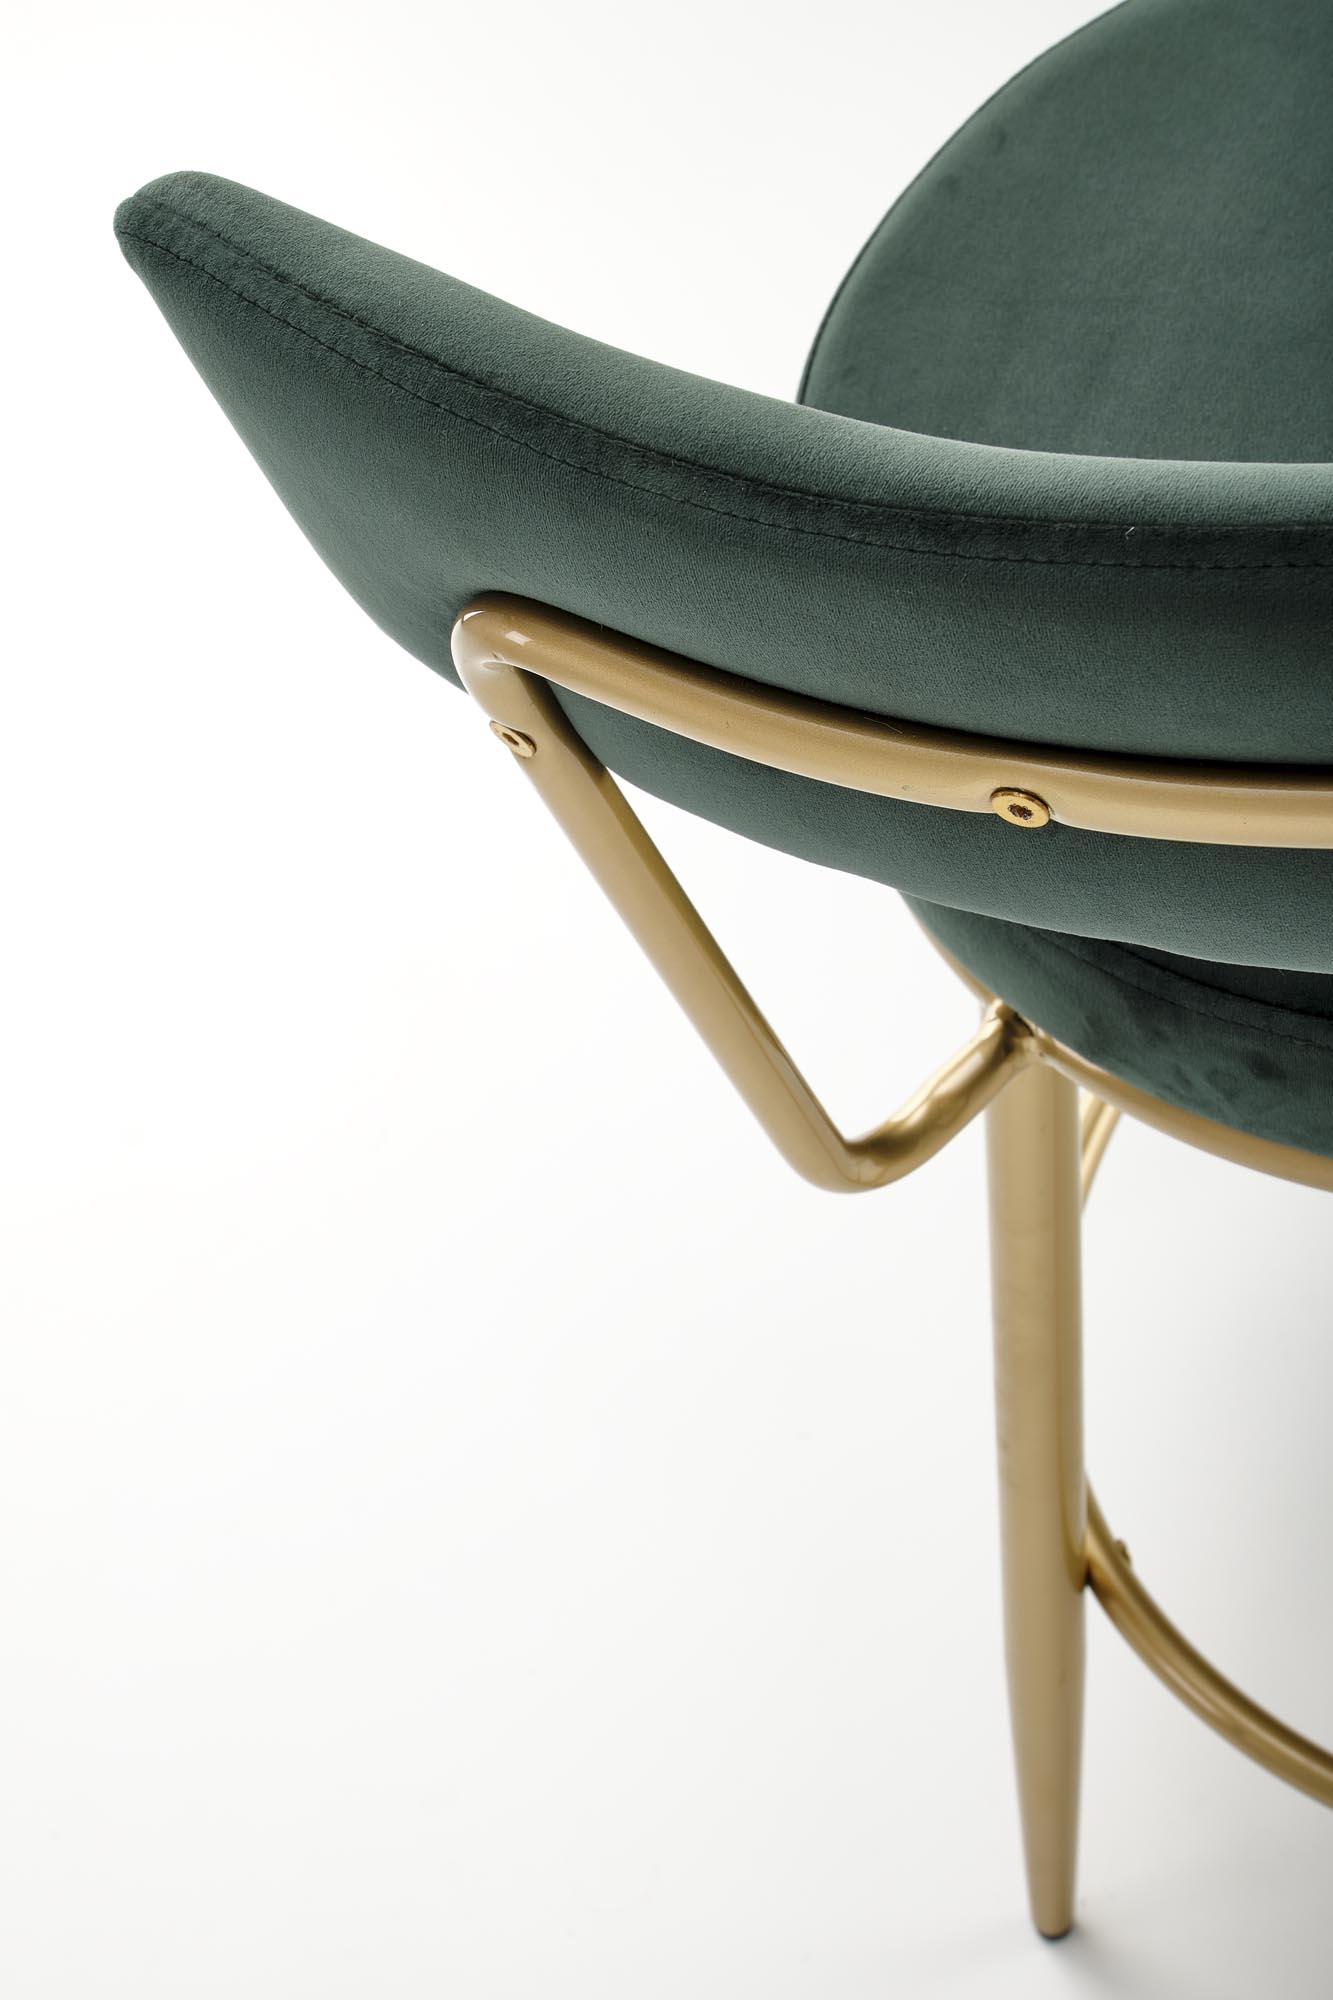 H115 Barová stolička tmavý Zelený / zlaté hoketr čalúnená h115 - tmavá zelená / zlaté